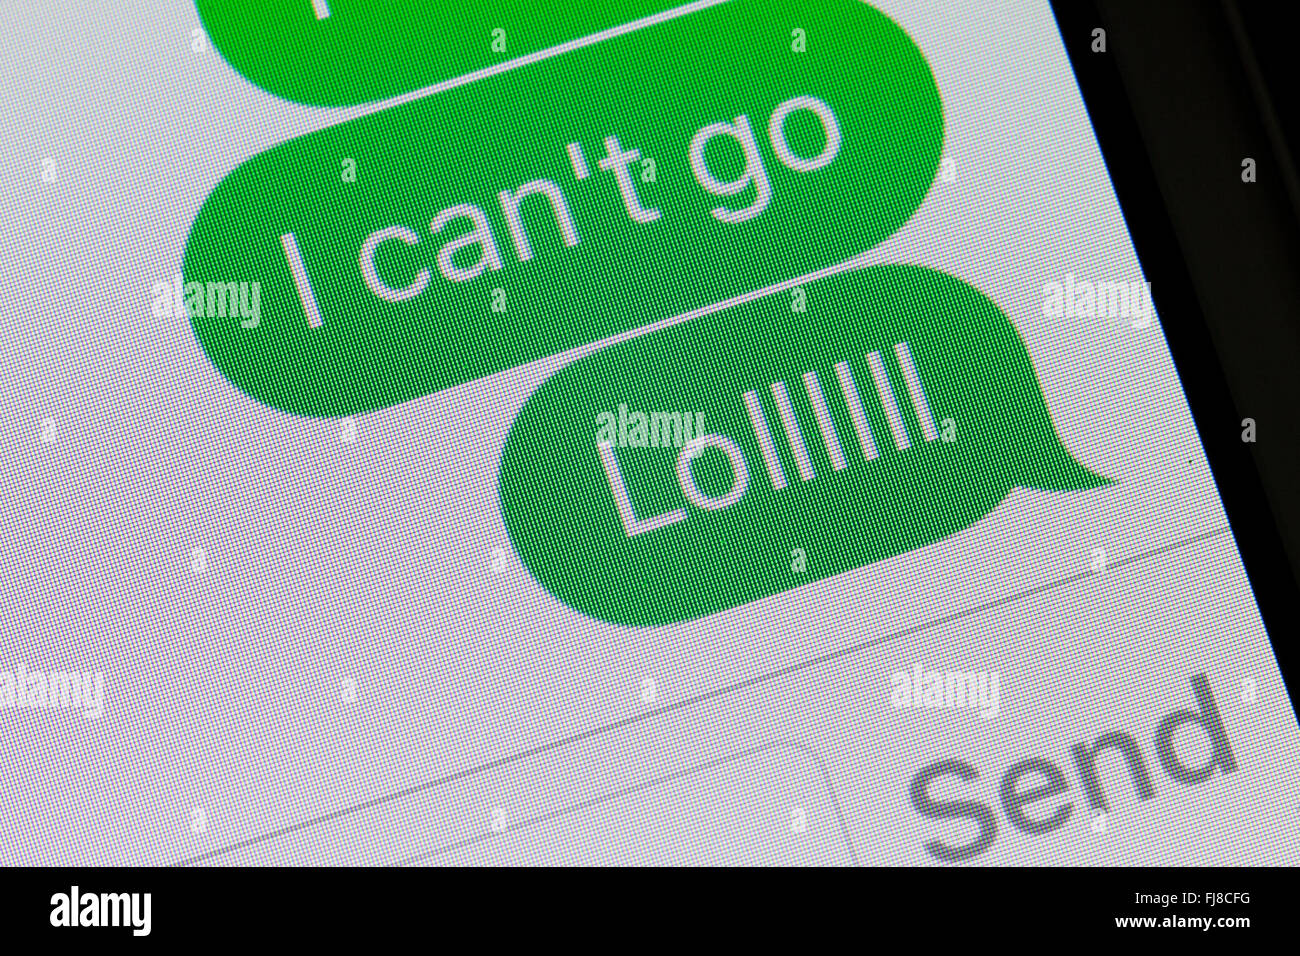 Mensaje de texto en la pantalla del iPhone (LOL mensaje de texto, texto común argot) - EE.UU. Foto de stock